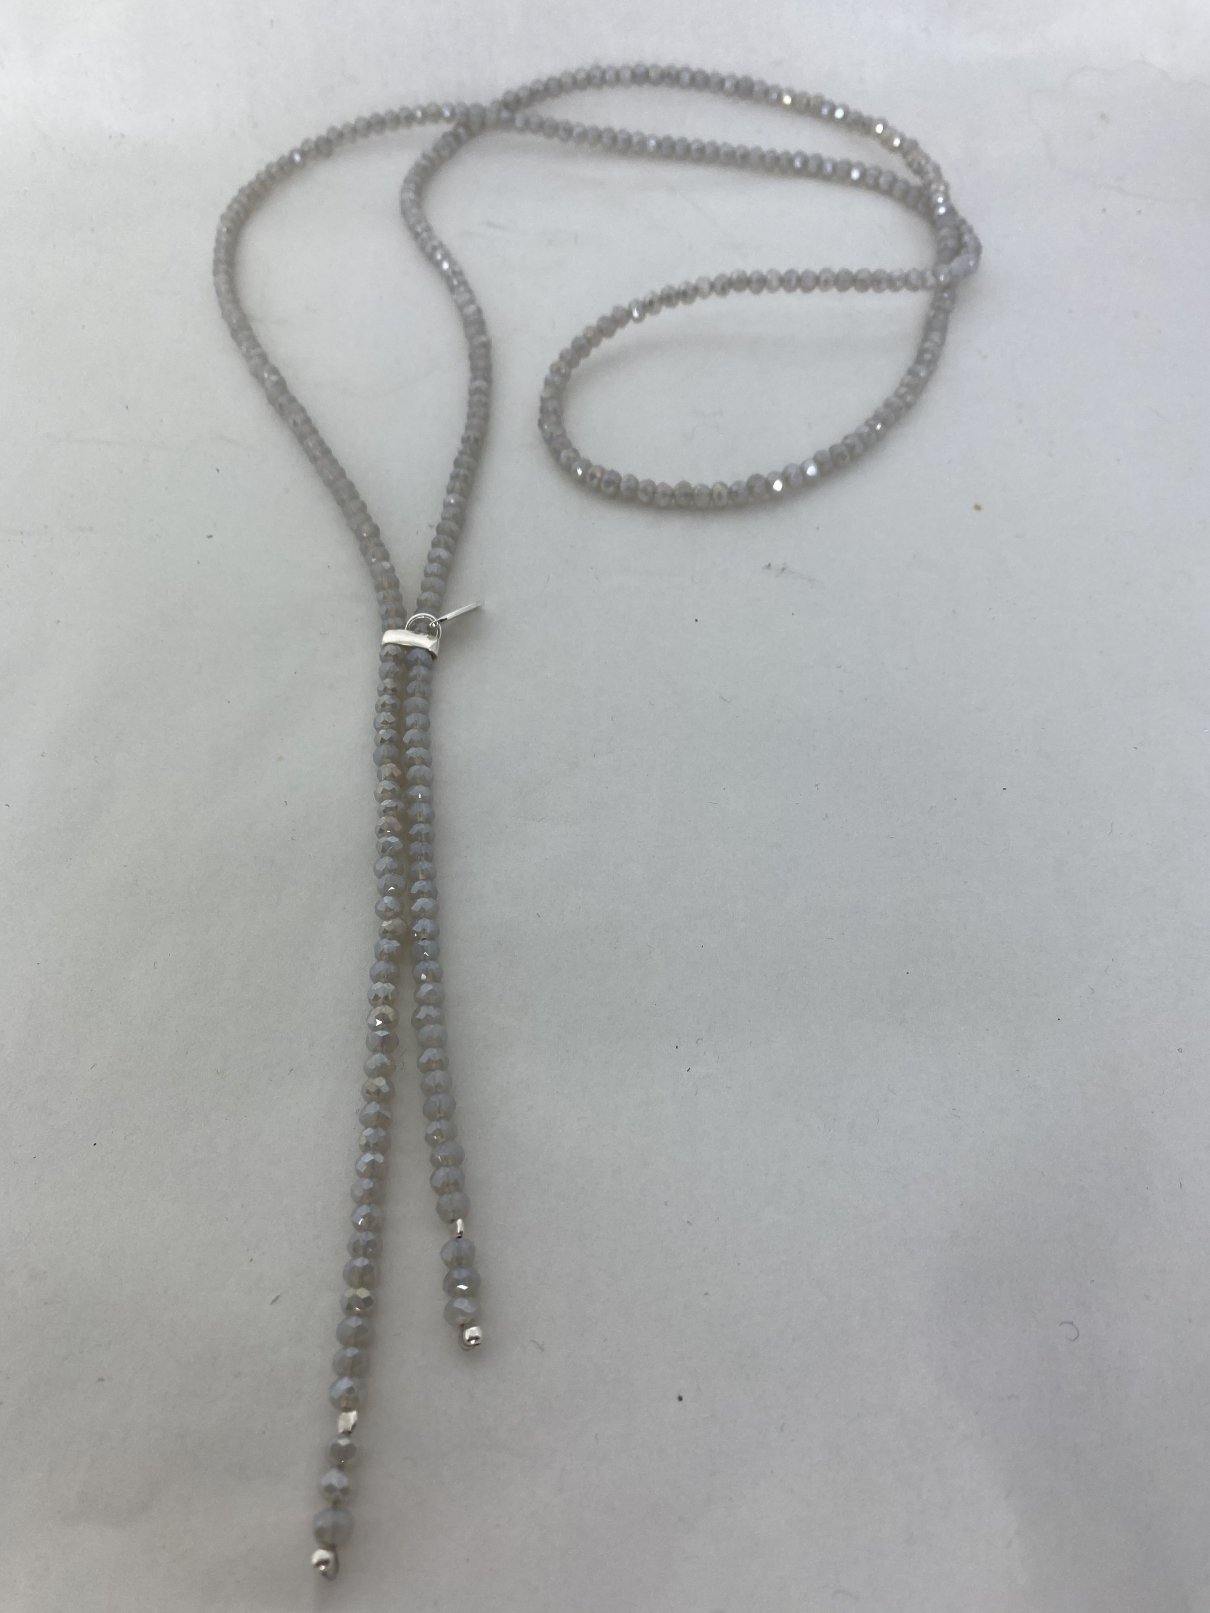 Halskette mit offwhitefarbenen Glasperlen - C. Strauch Mode 